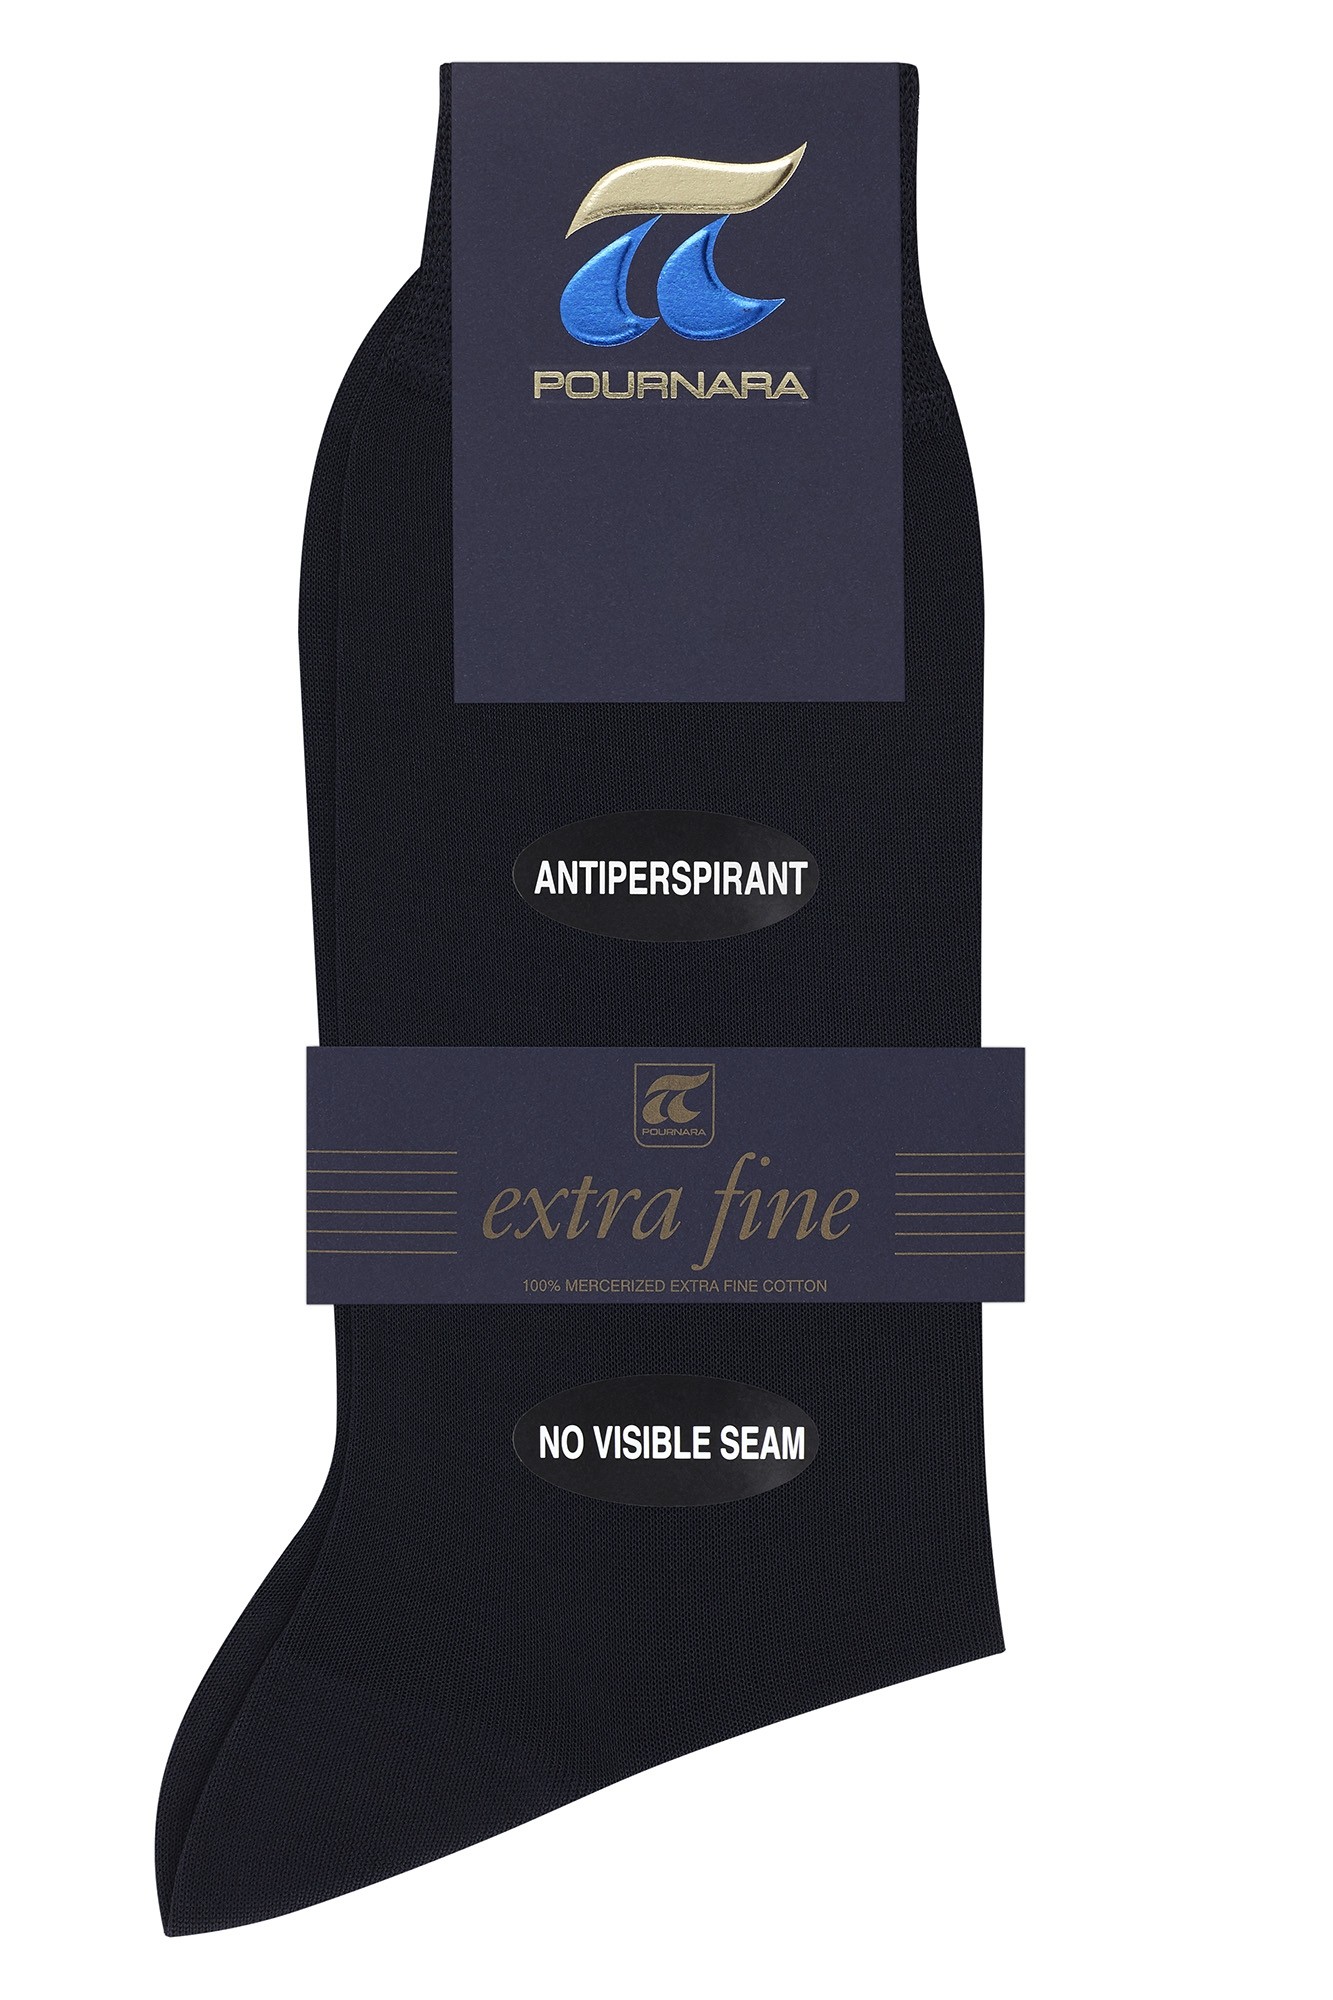 Ανδρική κάλτσα Pournara αντιιδρωτική (150-150Α)